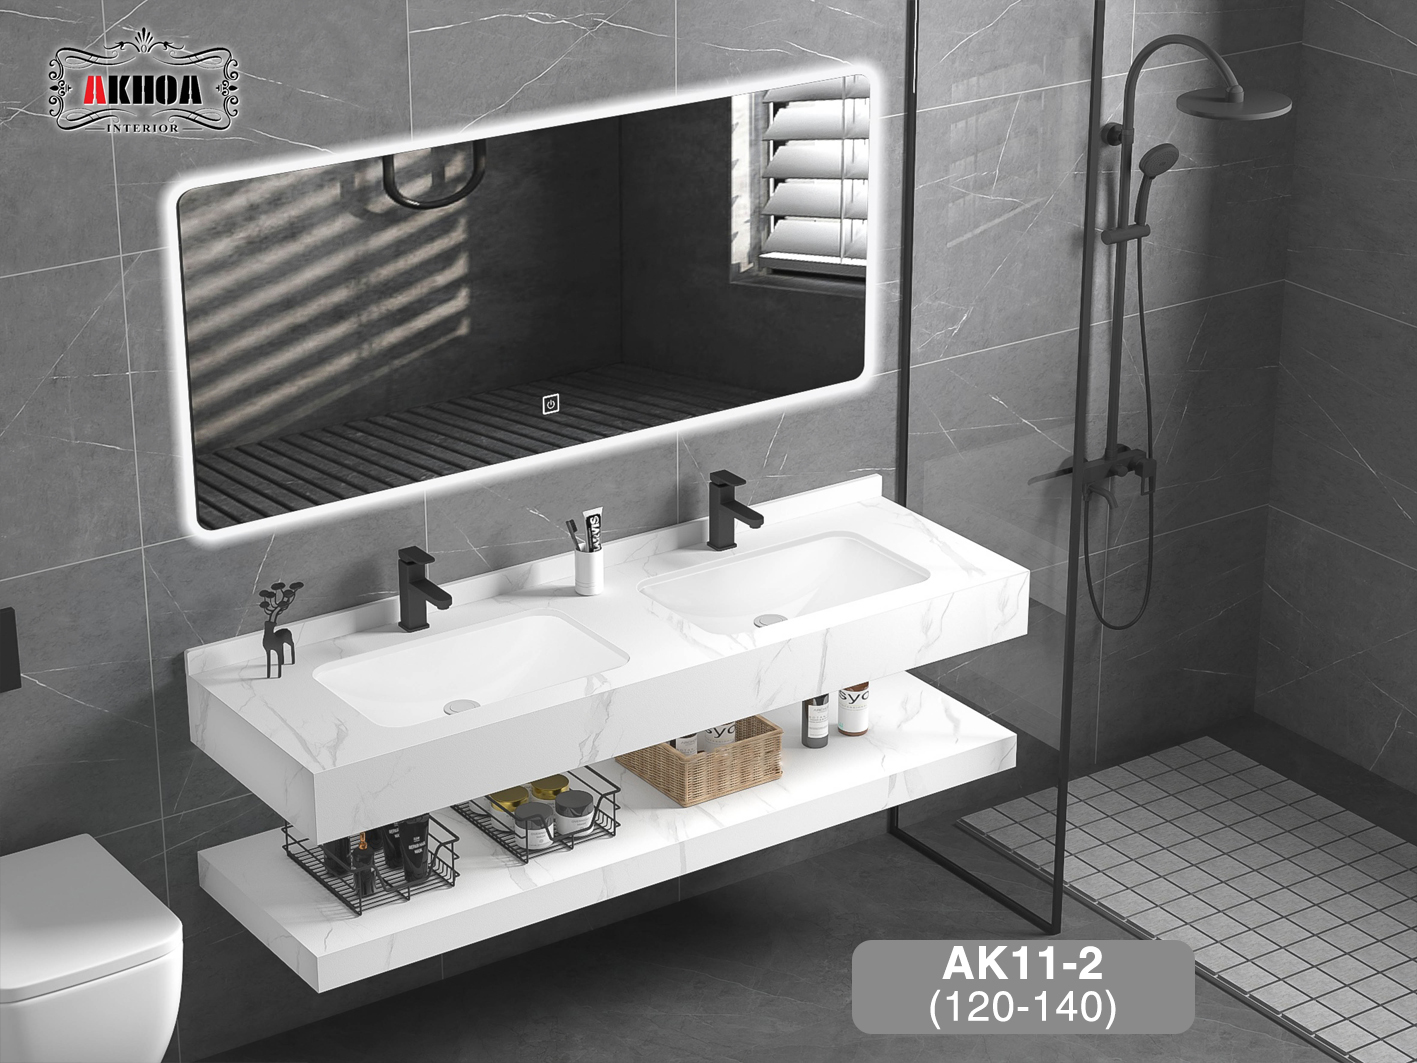 Tủ chậu lavabo mặt đá 2 tầng AKhoa AK11-2(120-140)